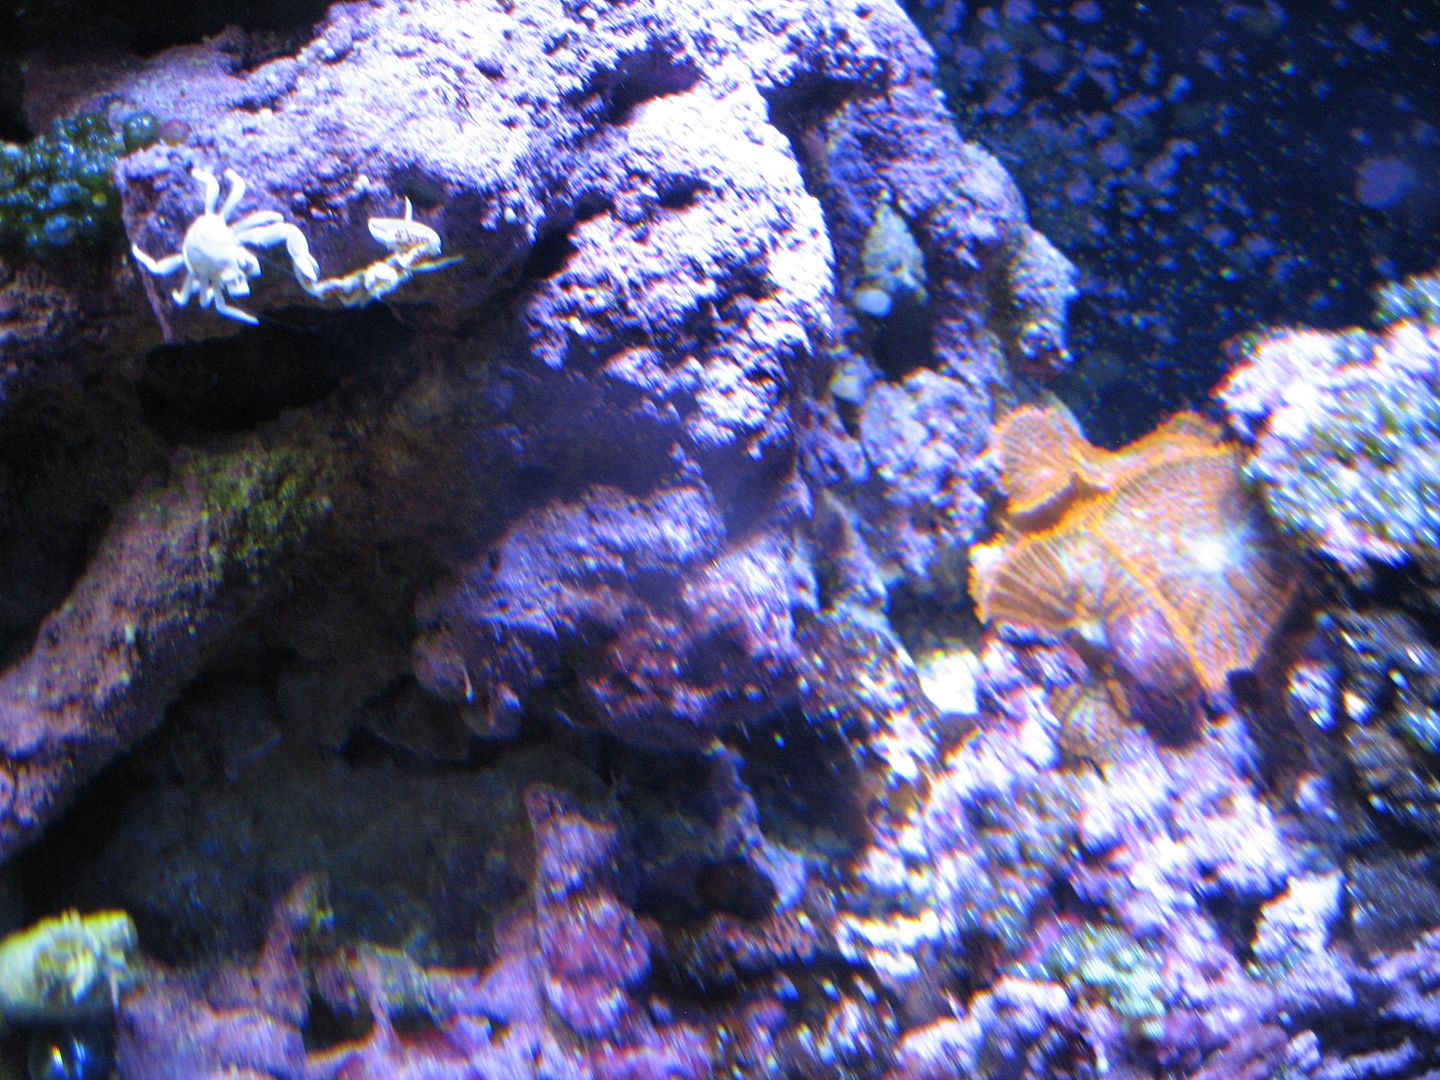 Aquarium_SupermanShrooms_07DEC2012.jpg